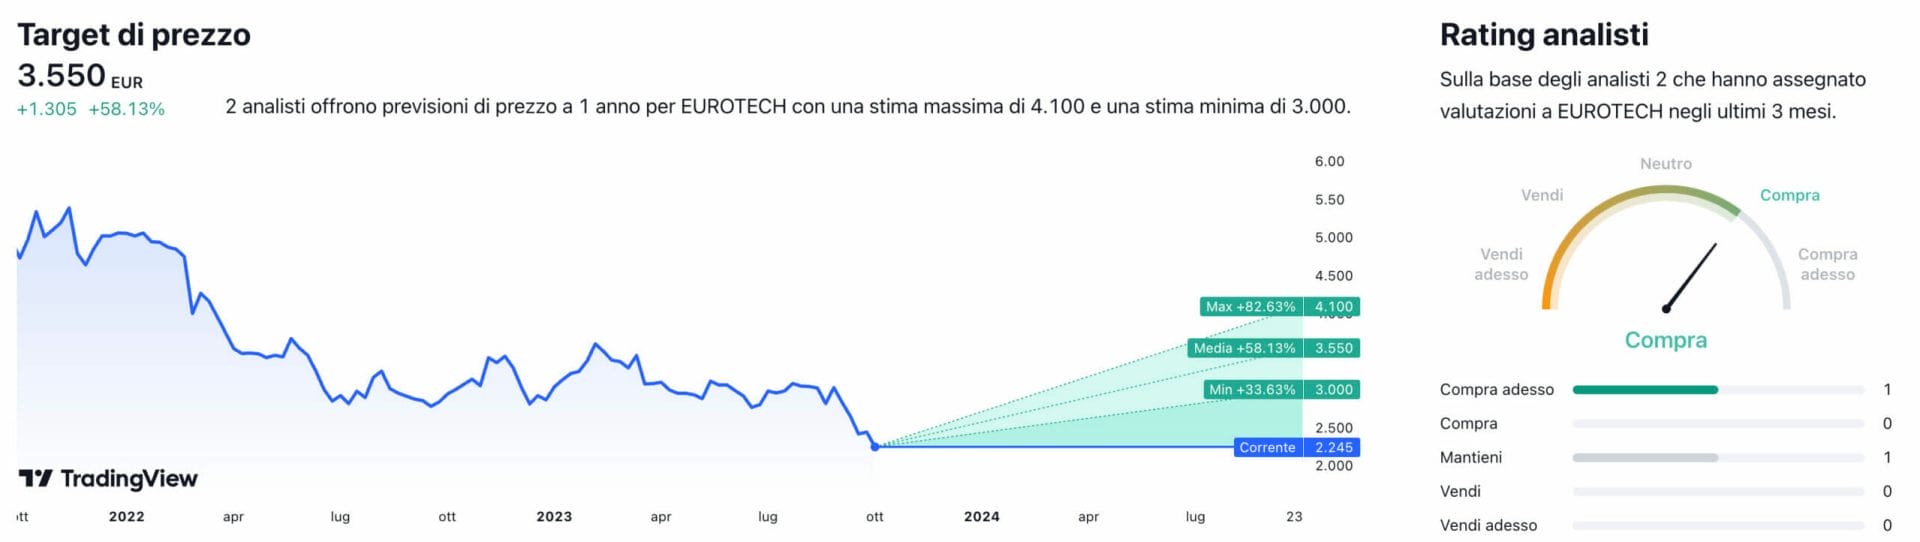 Target di prezzo a un anno e raccomandazioni degli analisti per il titolo Eurotech